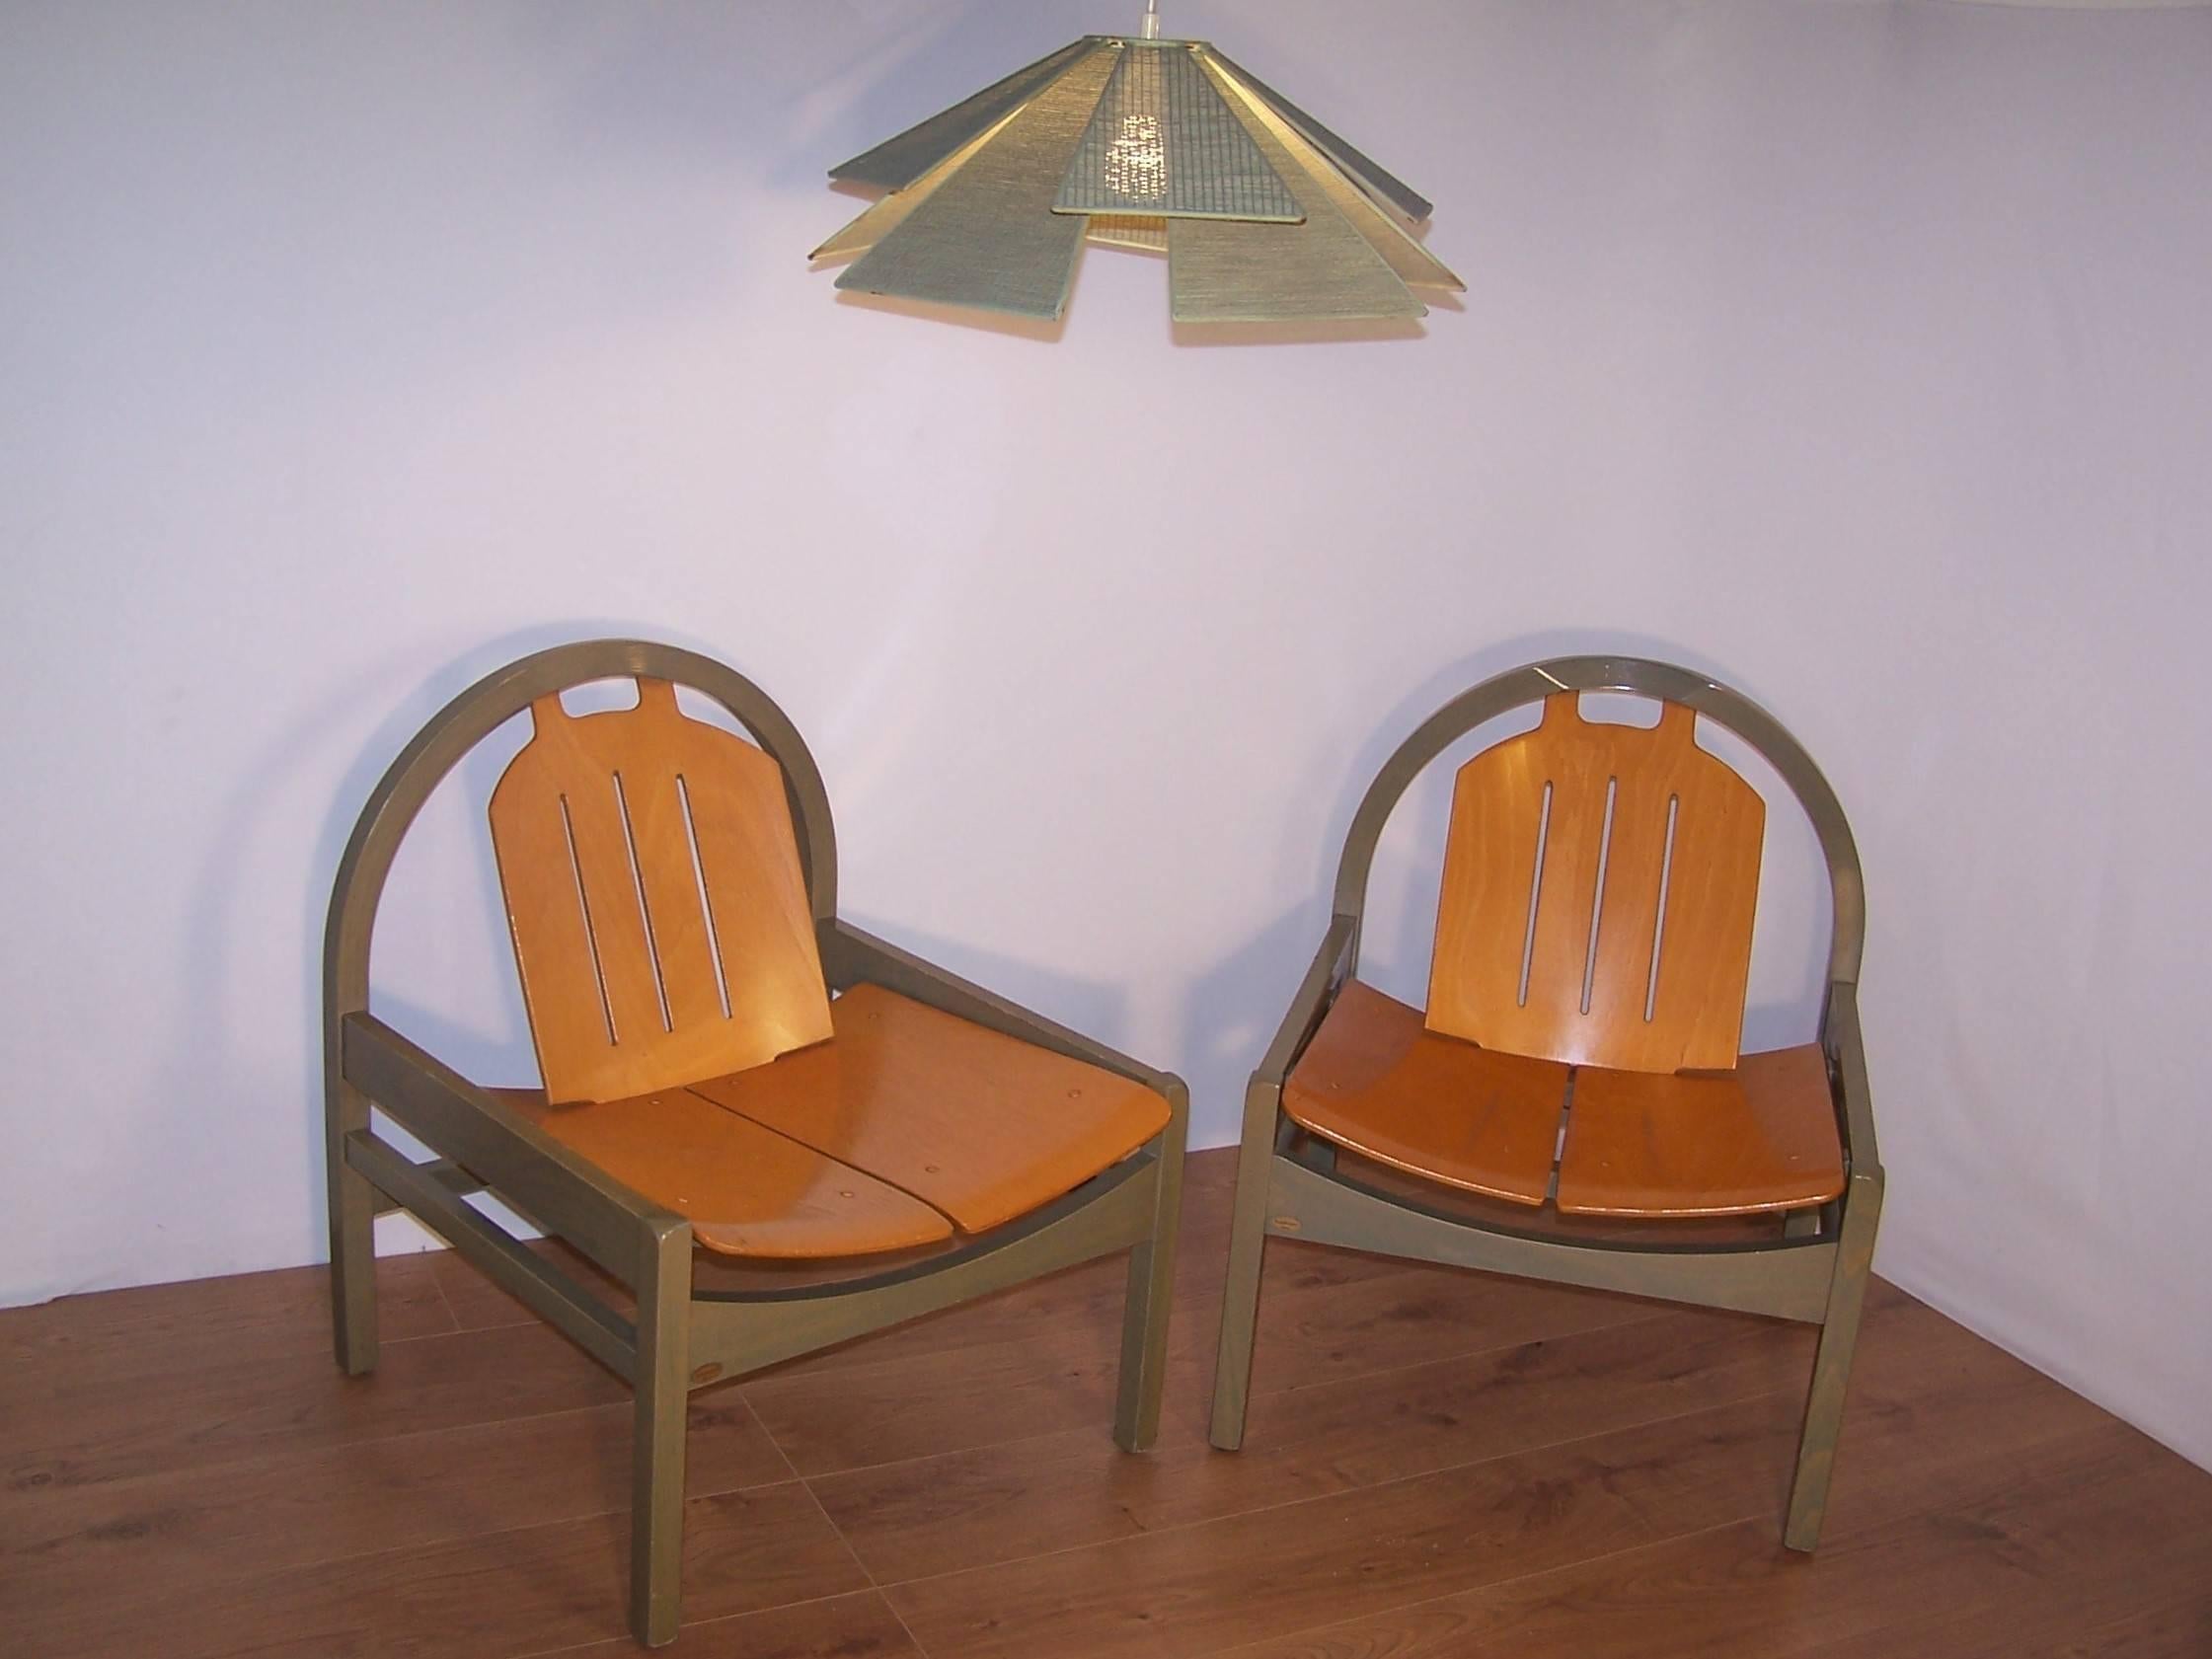 Paire de chaises longues confortables produites en France dans les années 1980 par Baumann. Chaque chaise est dotée d'un cadre en bois et d'un siège en bois. Trois paires disponibles.